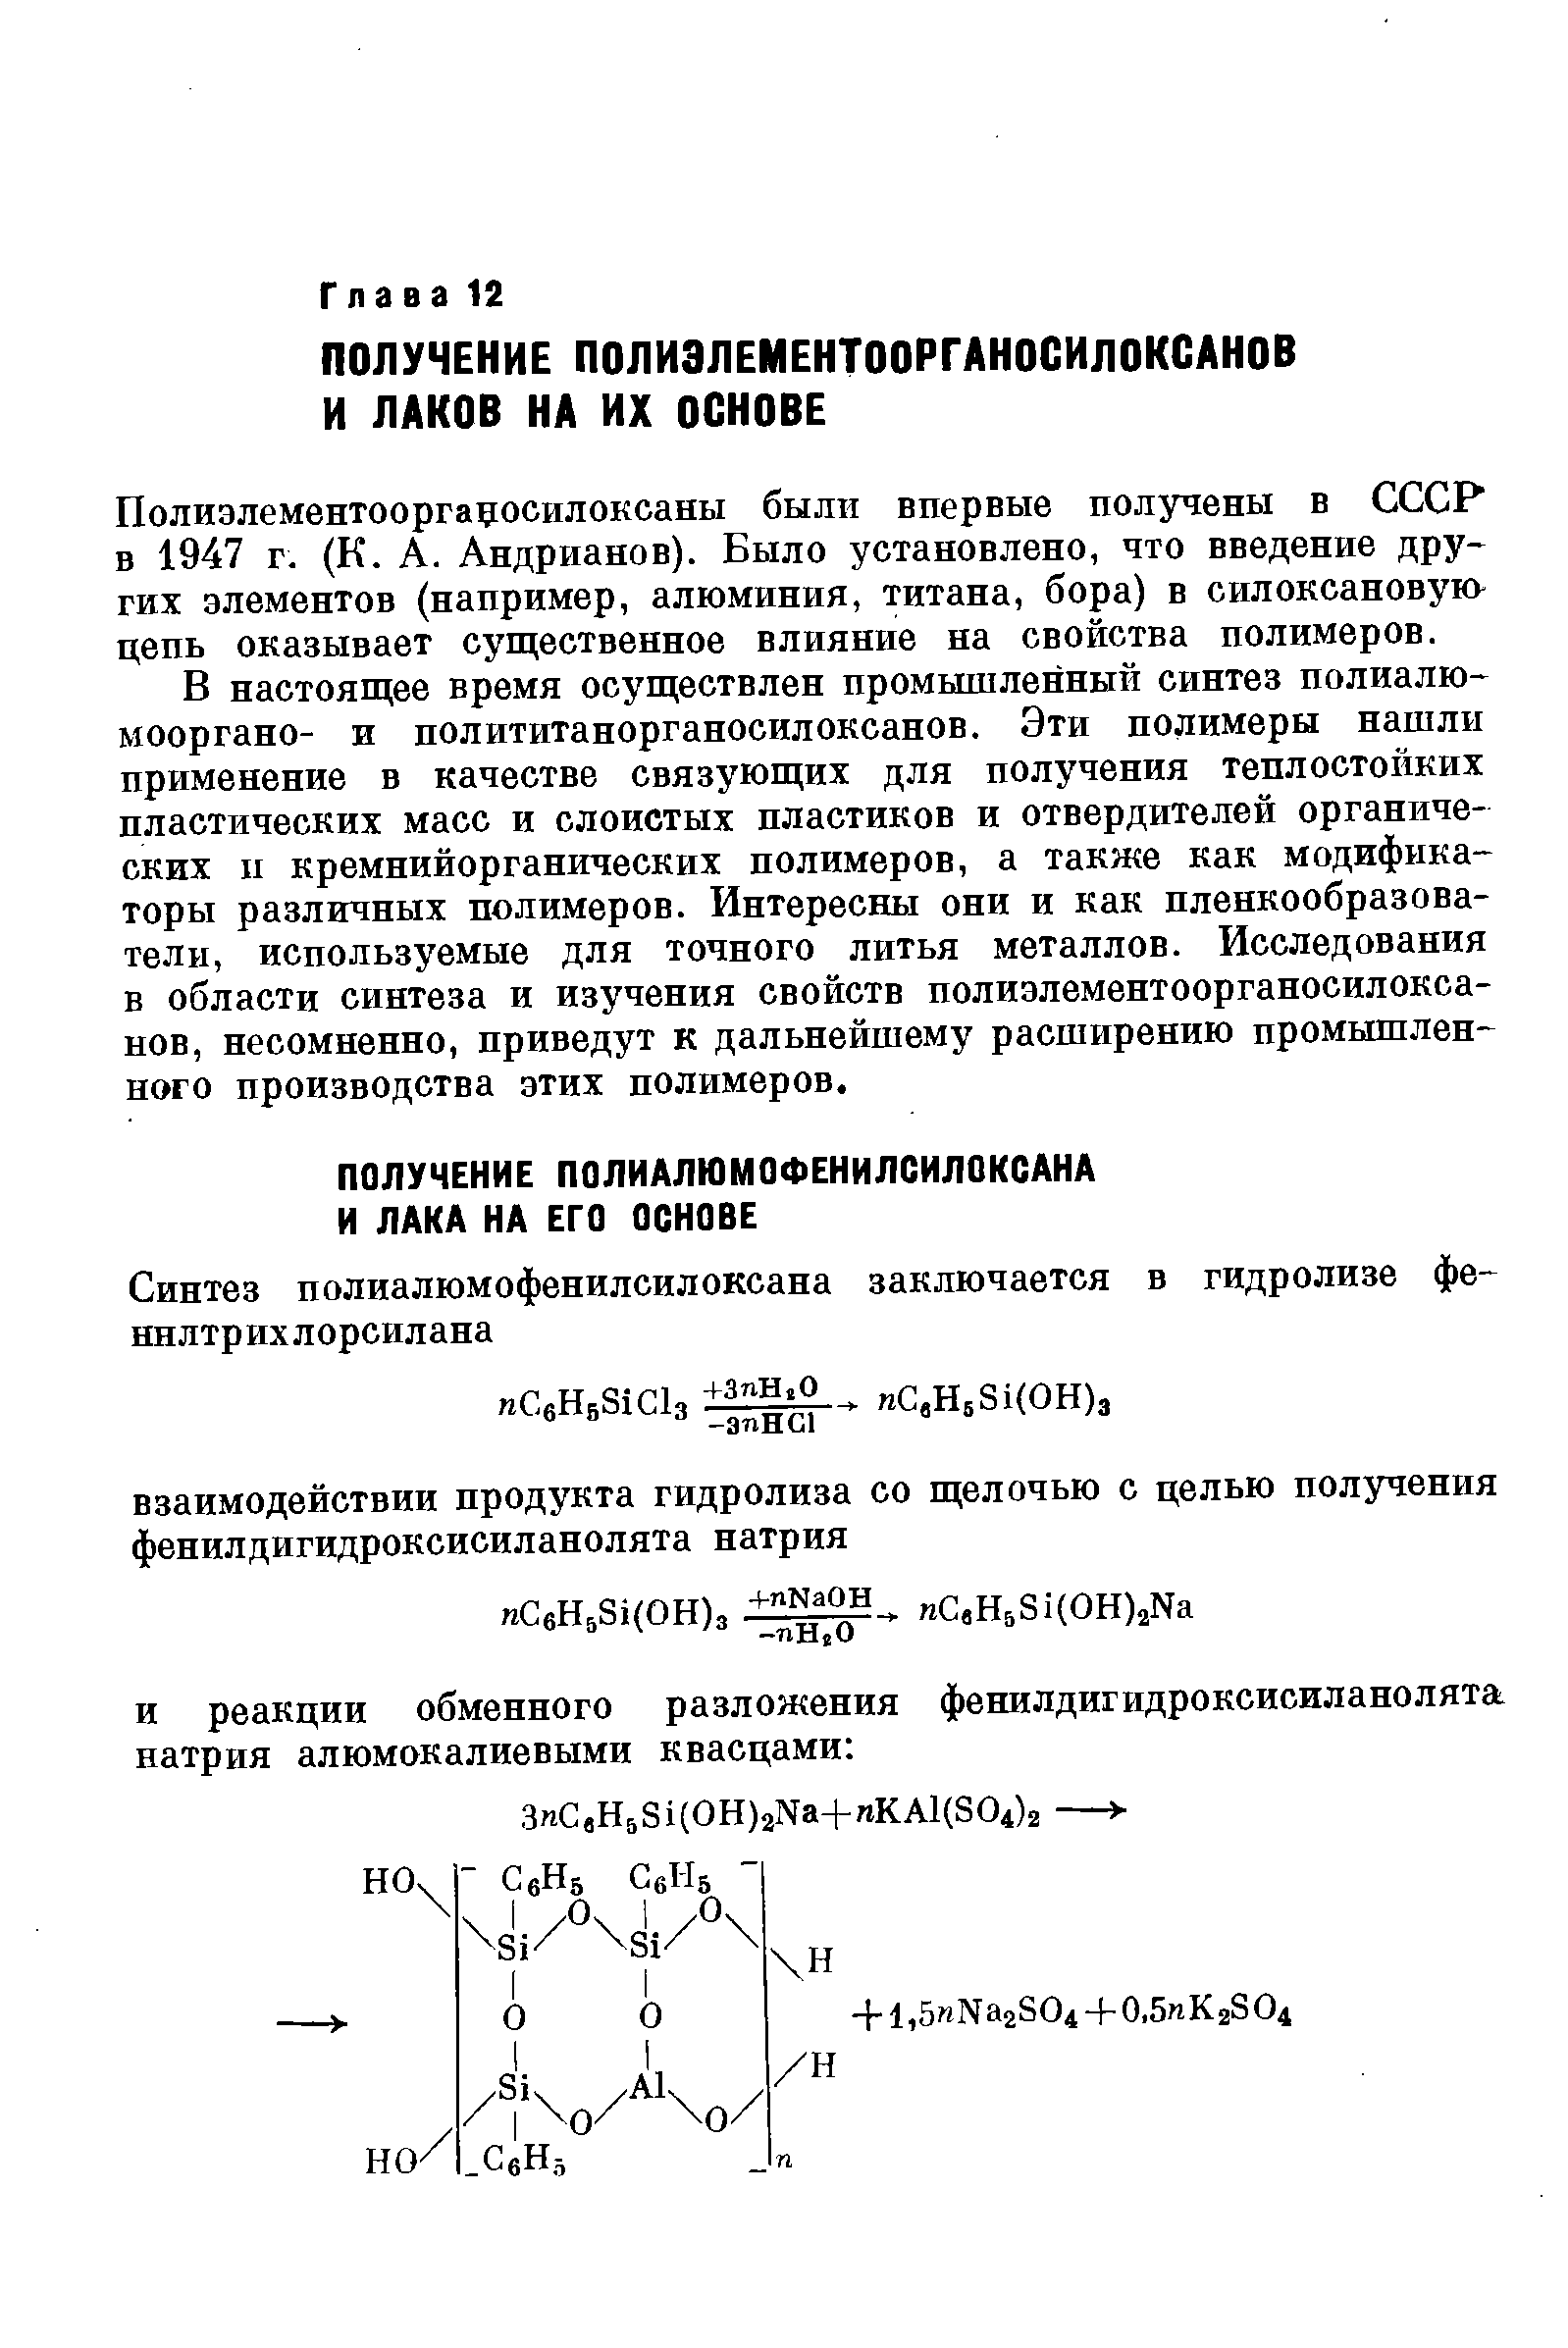 Полиэлементооргацосилоксаны были впервые получены в СССР в 1947 г. (К. А. Андрианов). Было установлено, что введение других элементов (например, алюминия, титана, бора) в силоксановую цепь оказывает существенное влияние на свойства полимеров.